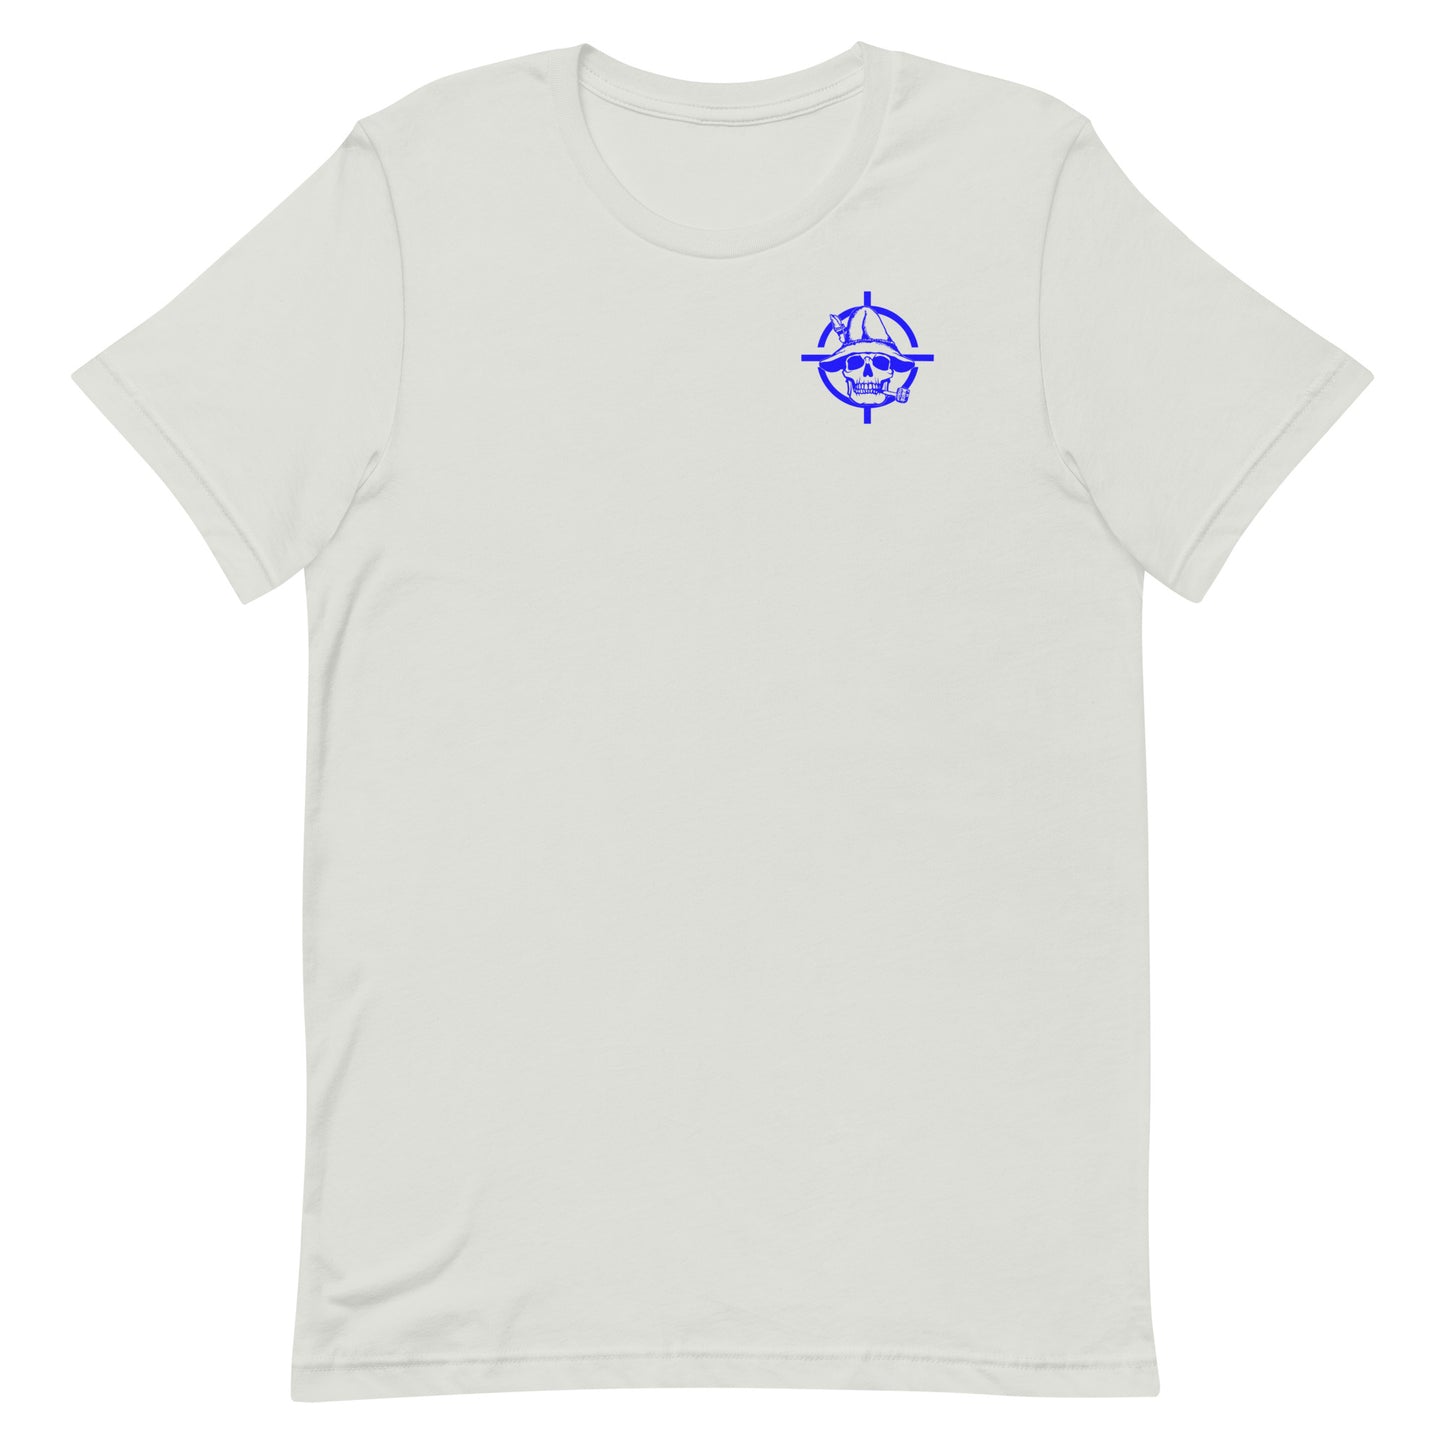 Blue Hillbilly Tactical Unisex t-shirt